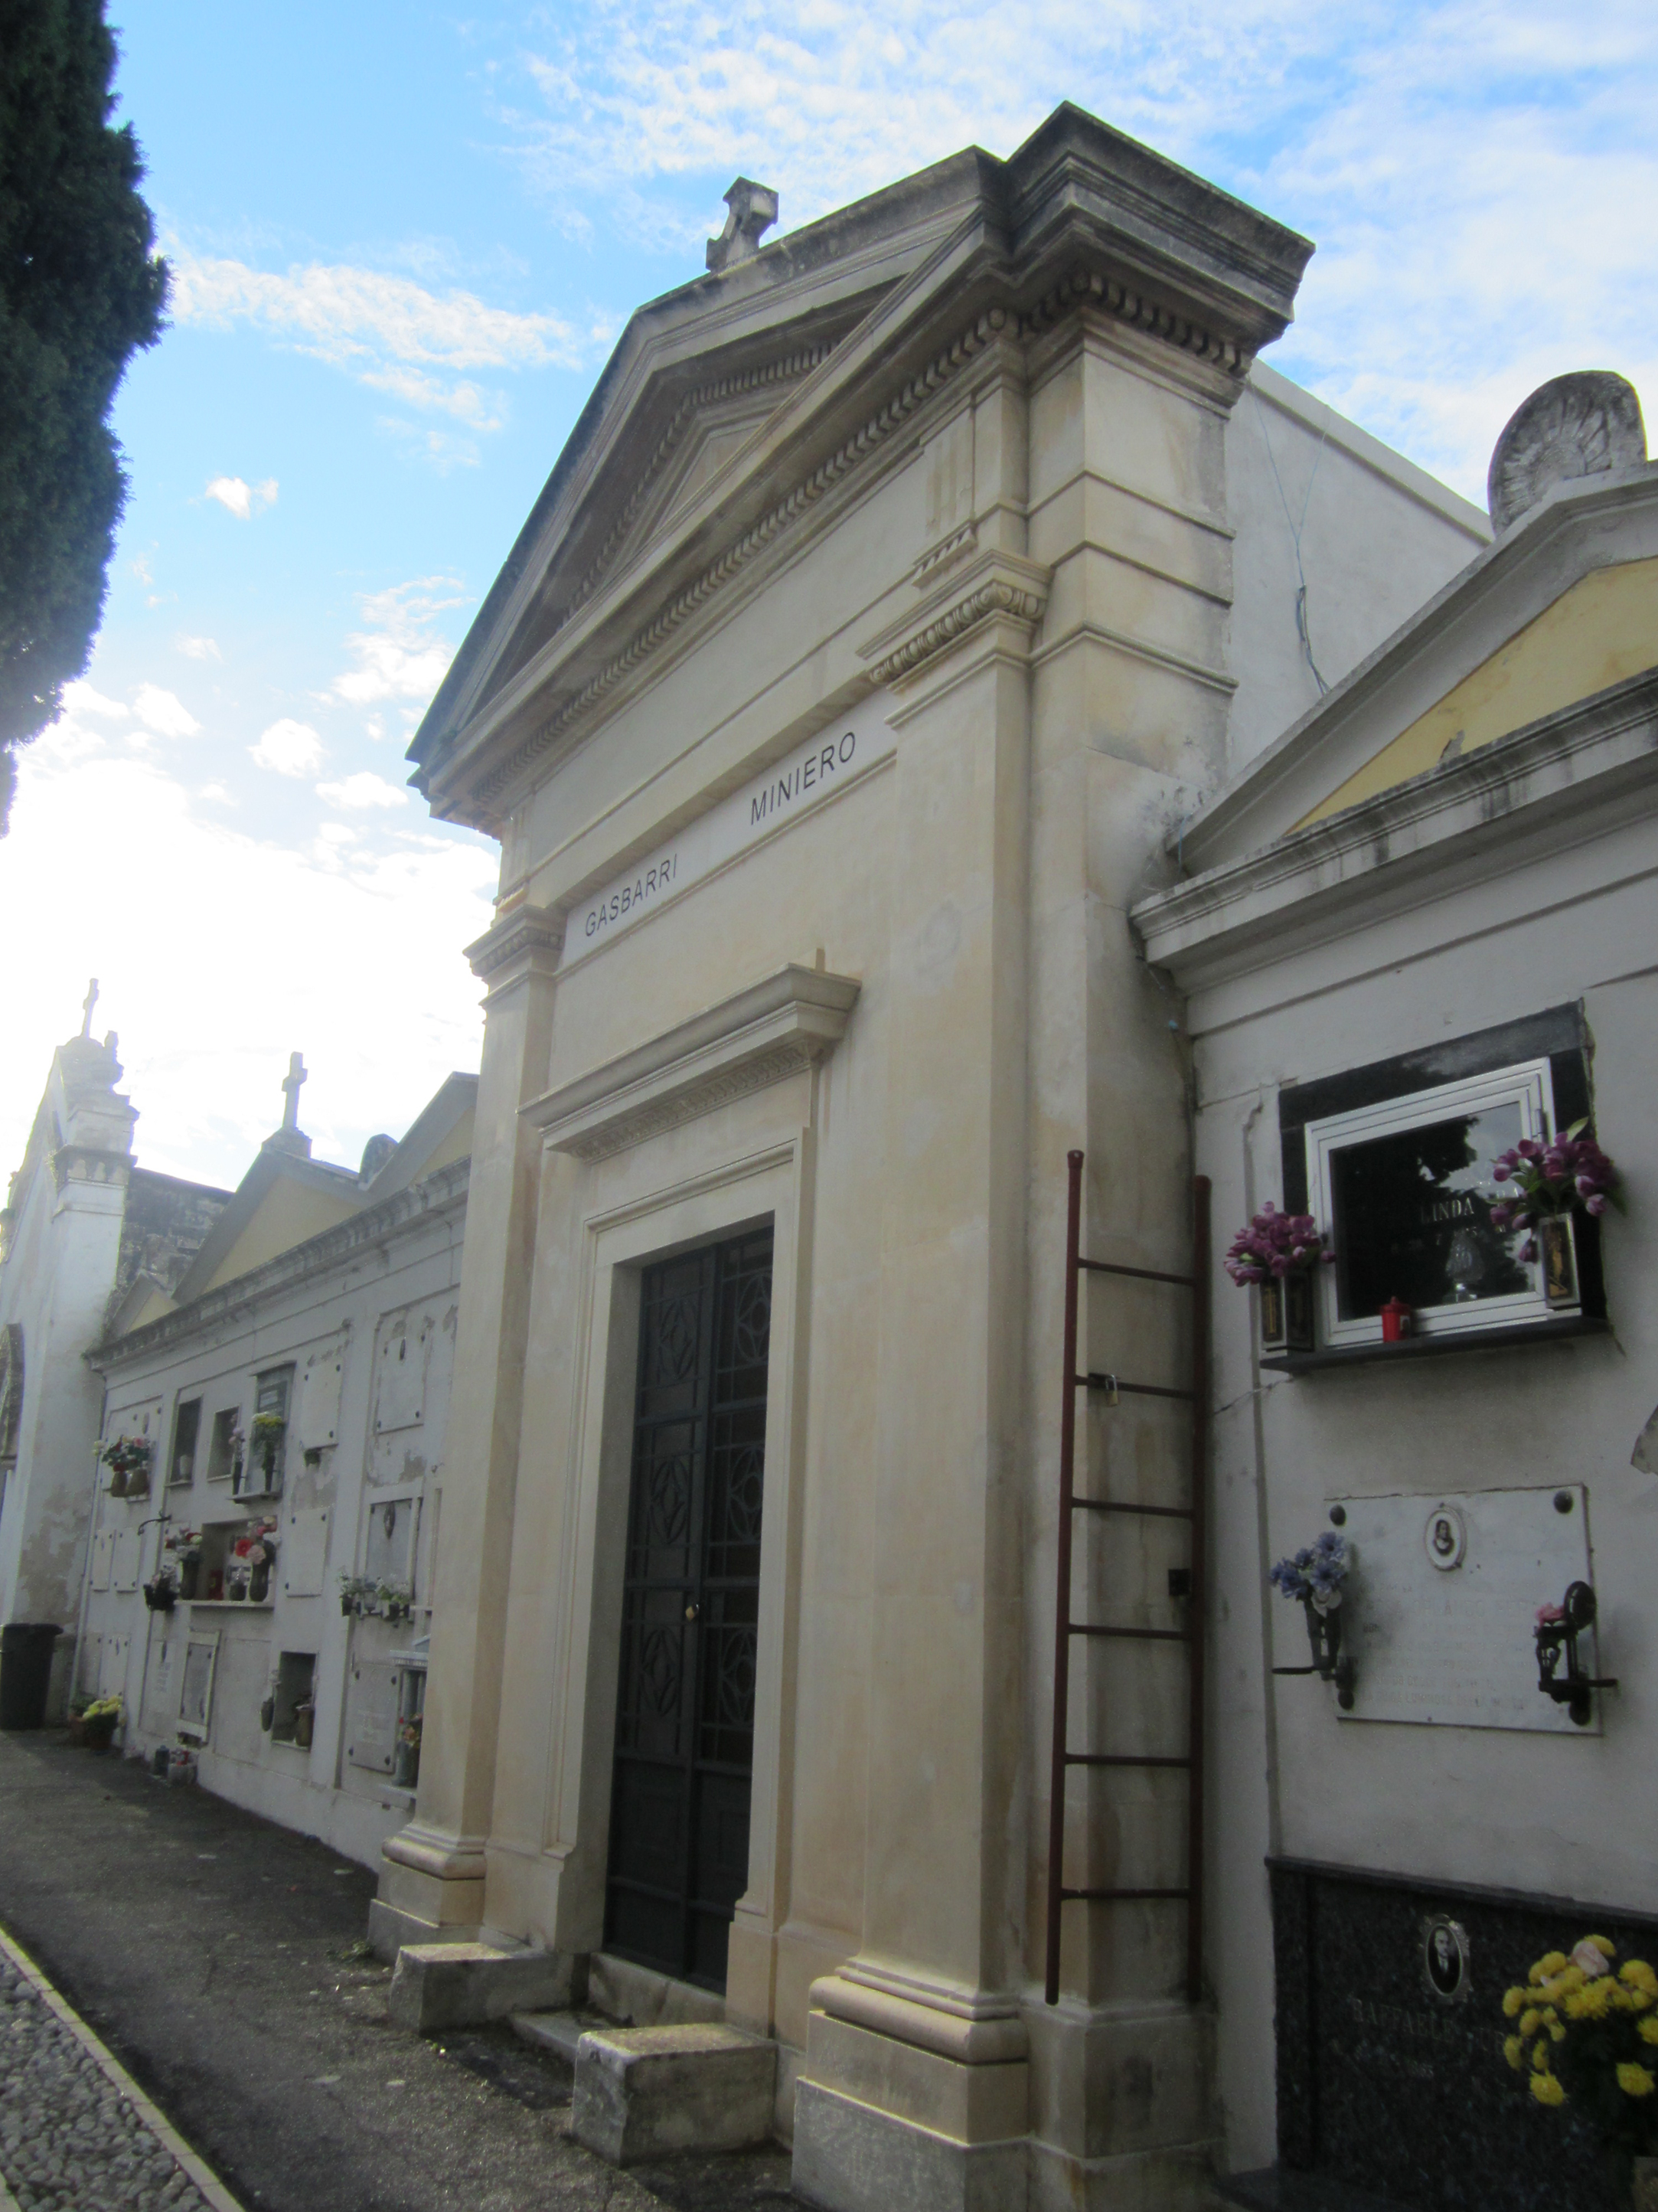 Cappella cimiteriale GASBARRI MINIERO (cimitero, monumentale) - Chieti (CH) 